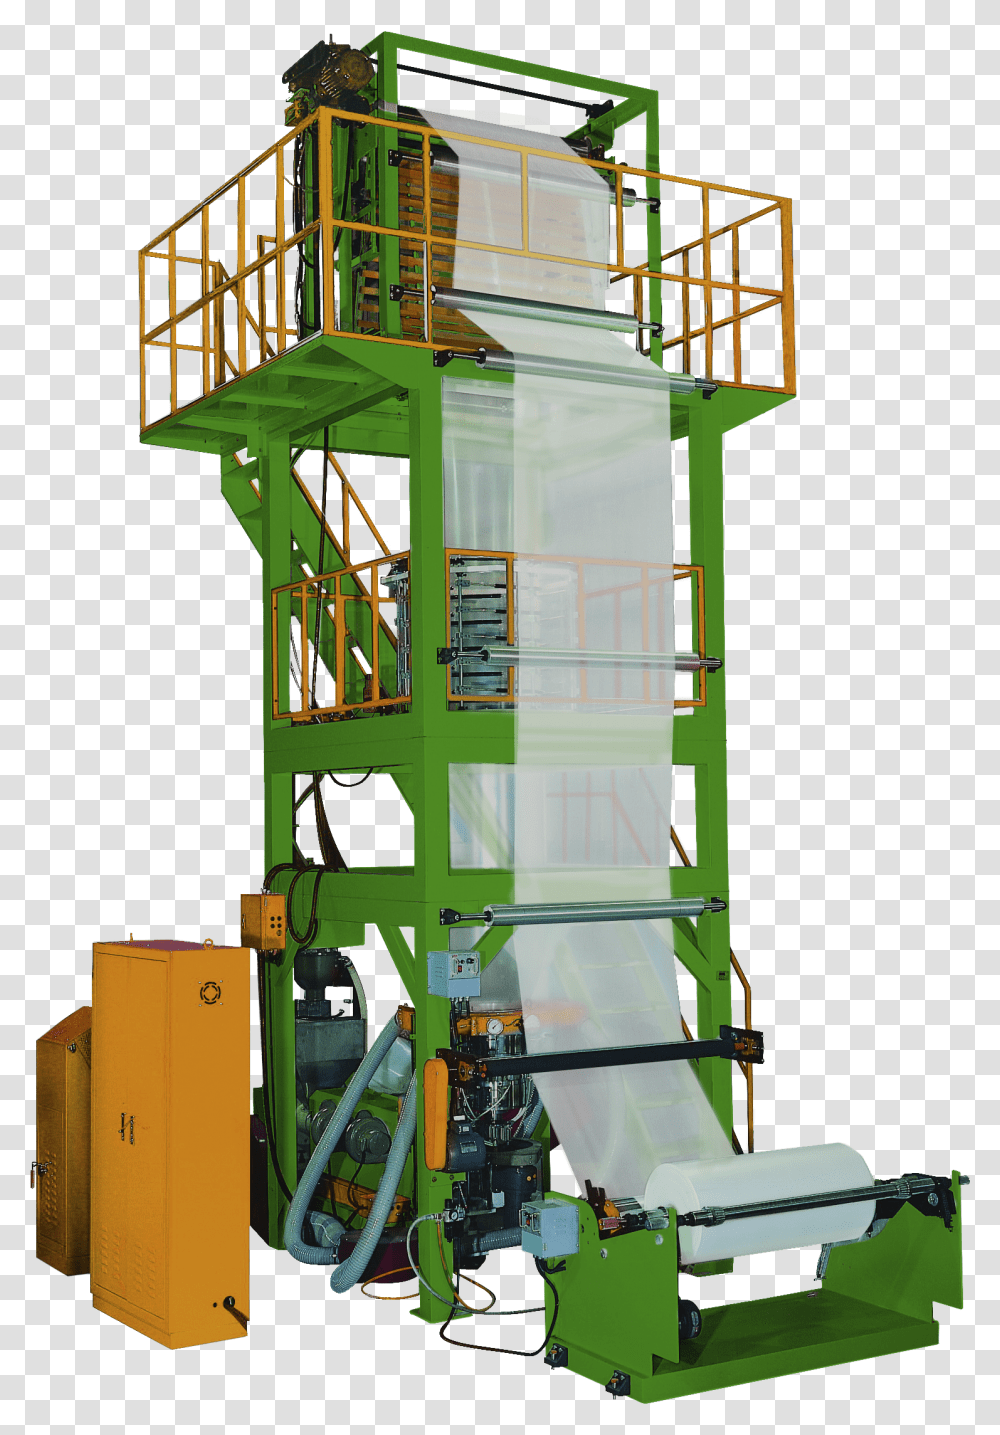 Machine, Construction Crane, Handrail, Banister, Building Transparent Png